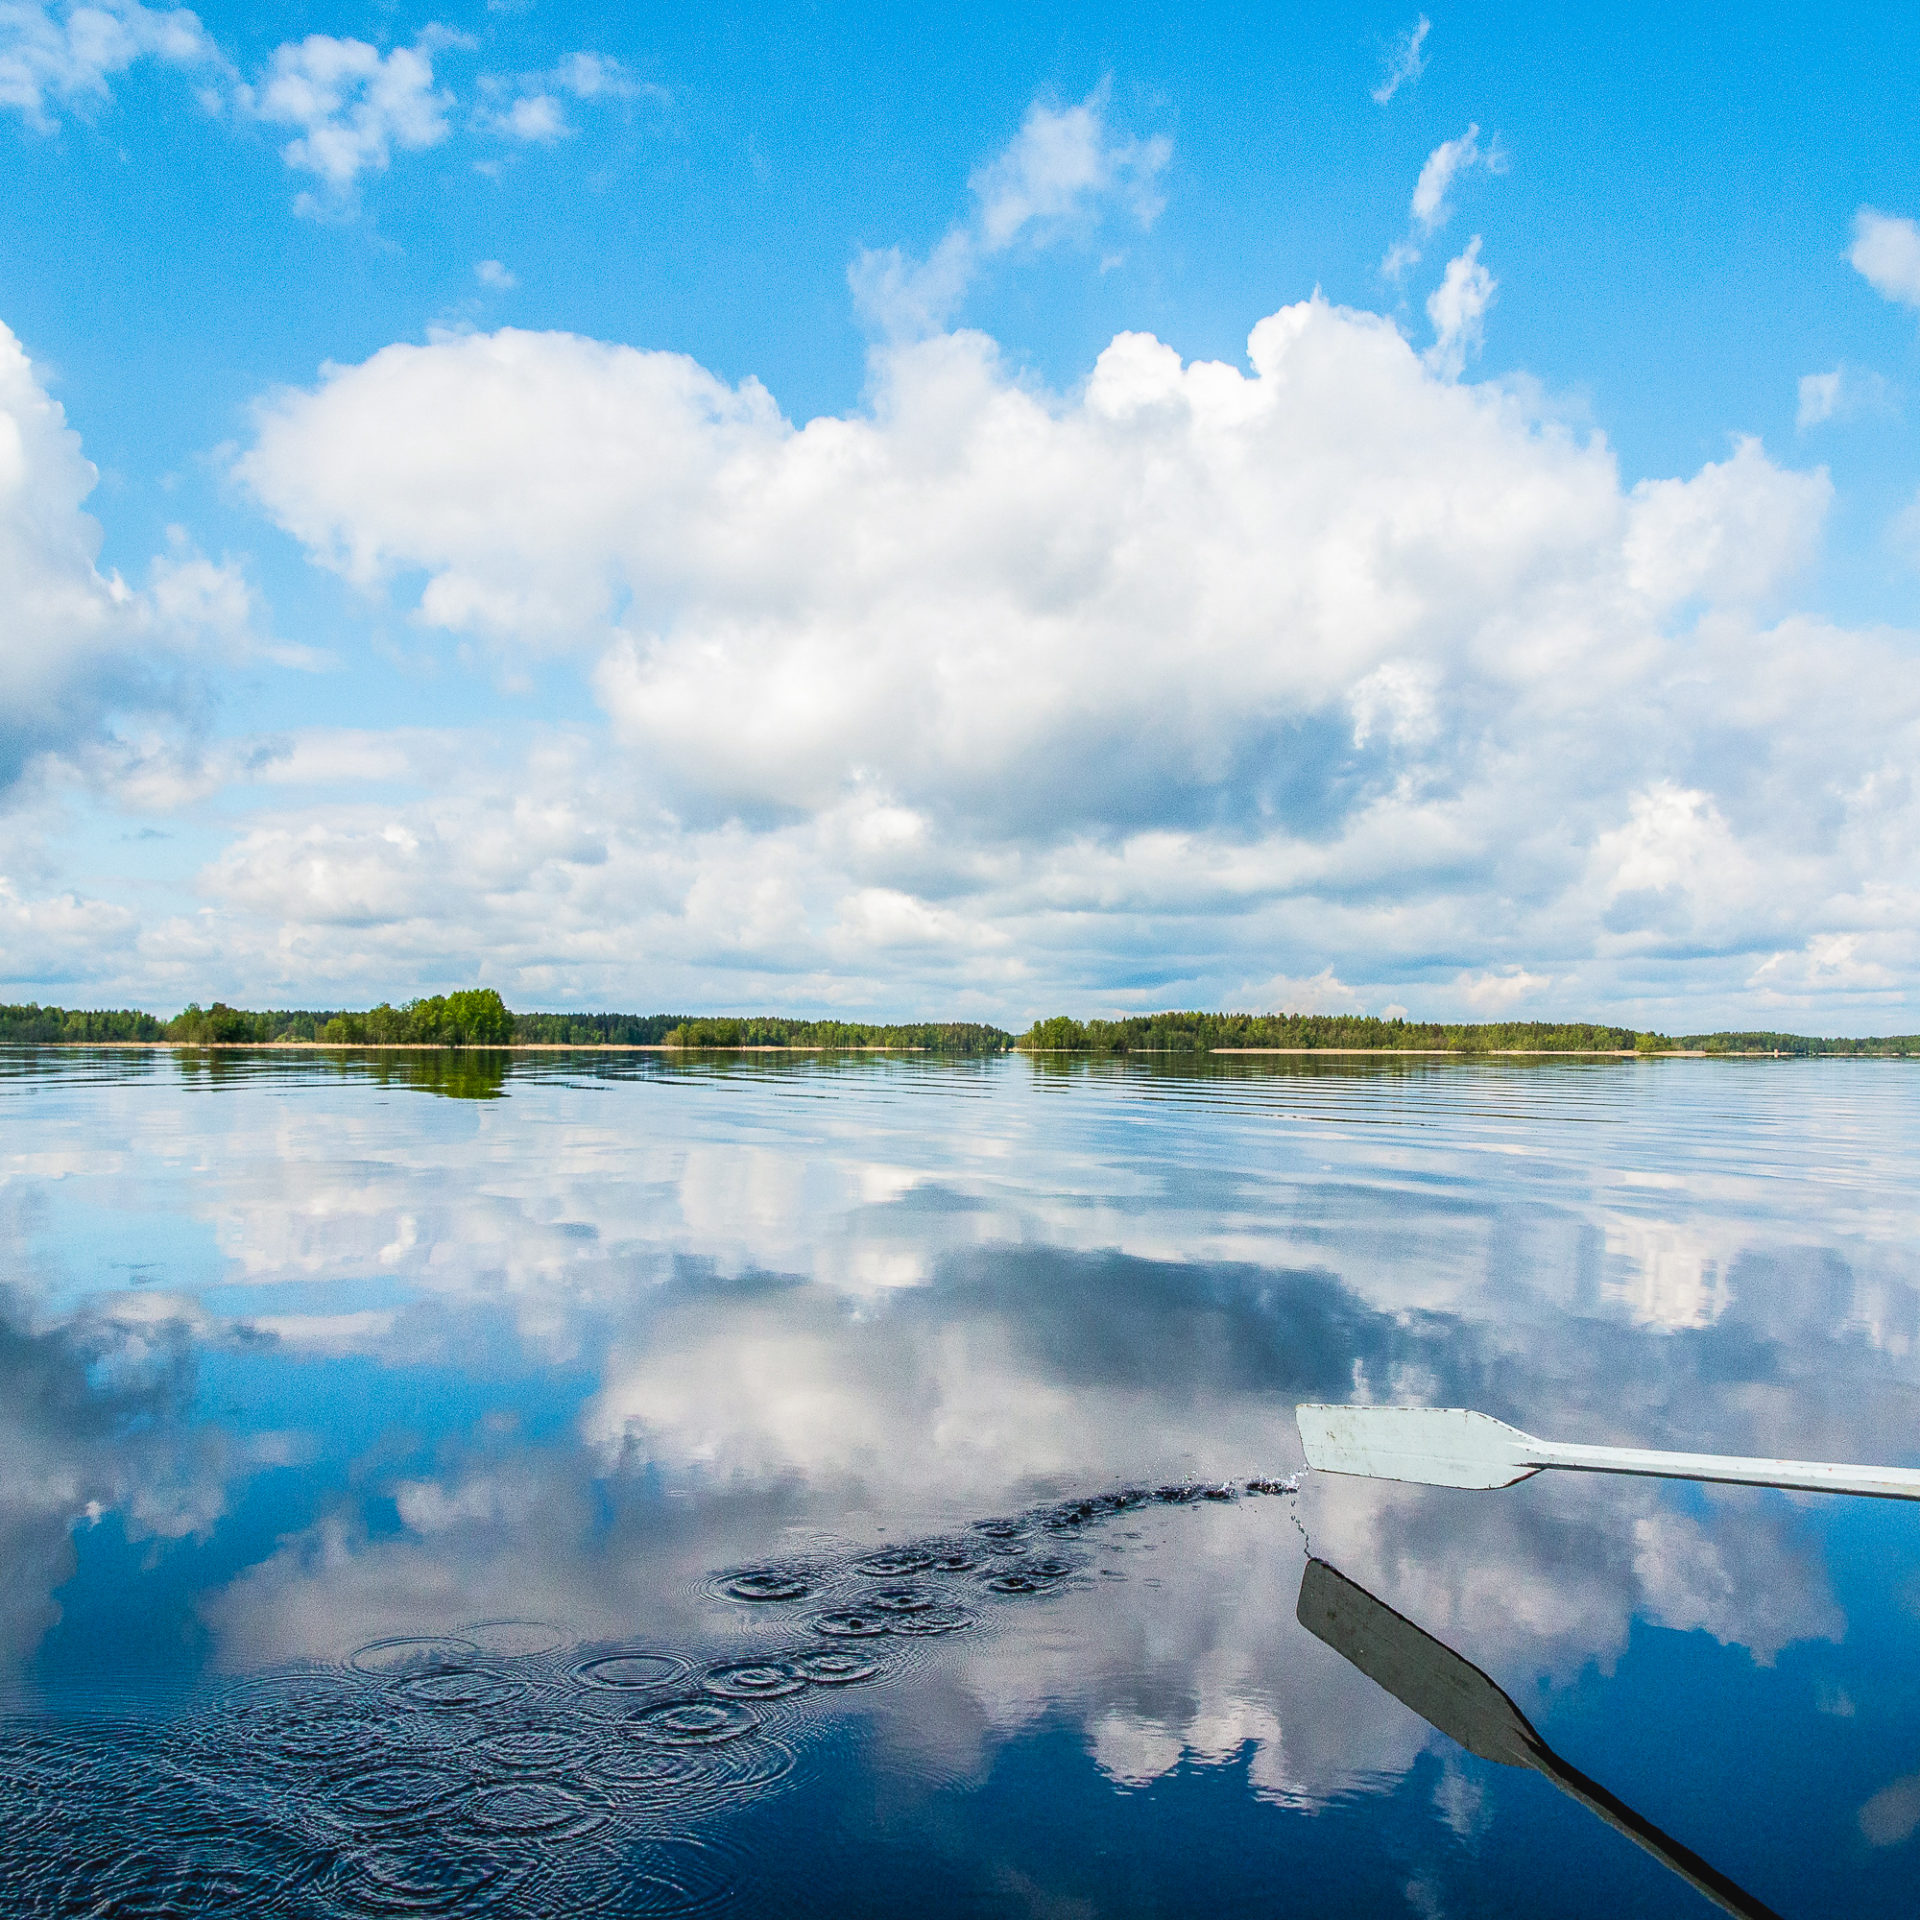 Tahko Rental summer - rowing boat. Tahko vuokravälineet / kesä - soutuvene. Villi Pohjola / Wild Nordic Finland @wildnordicfinland